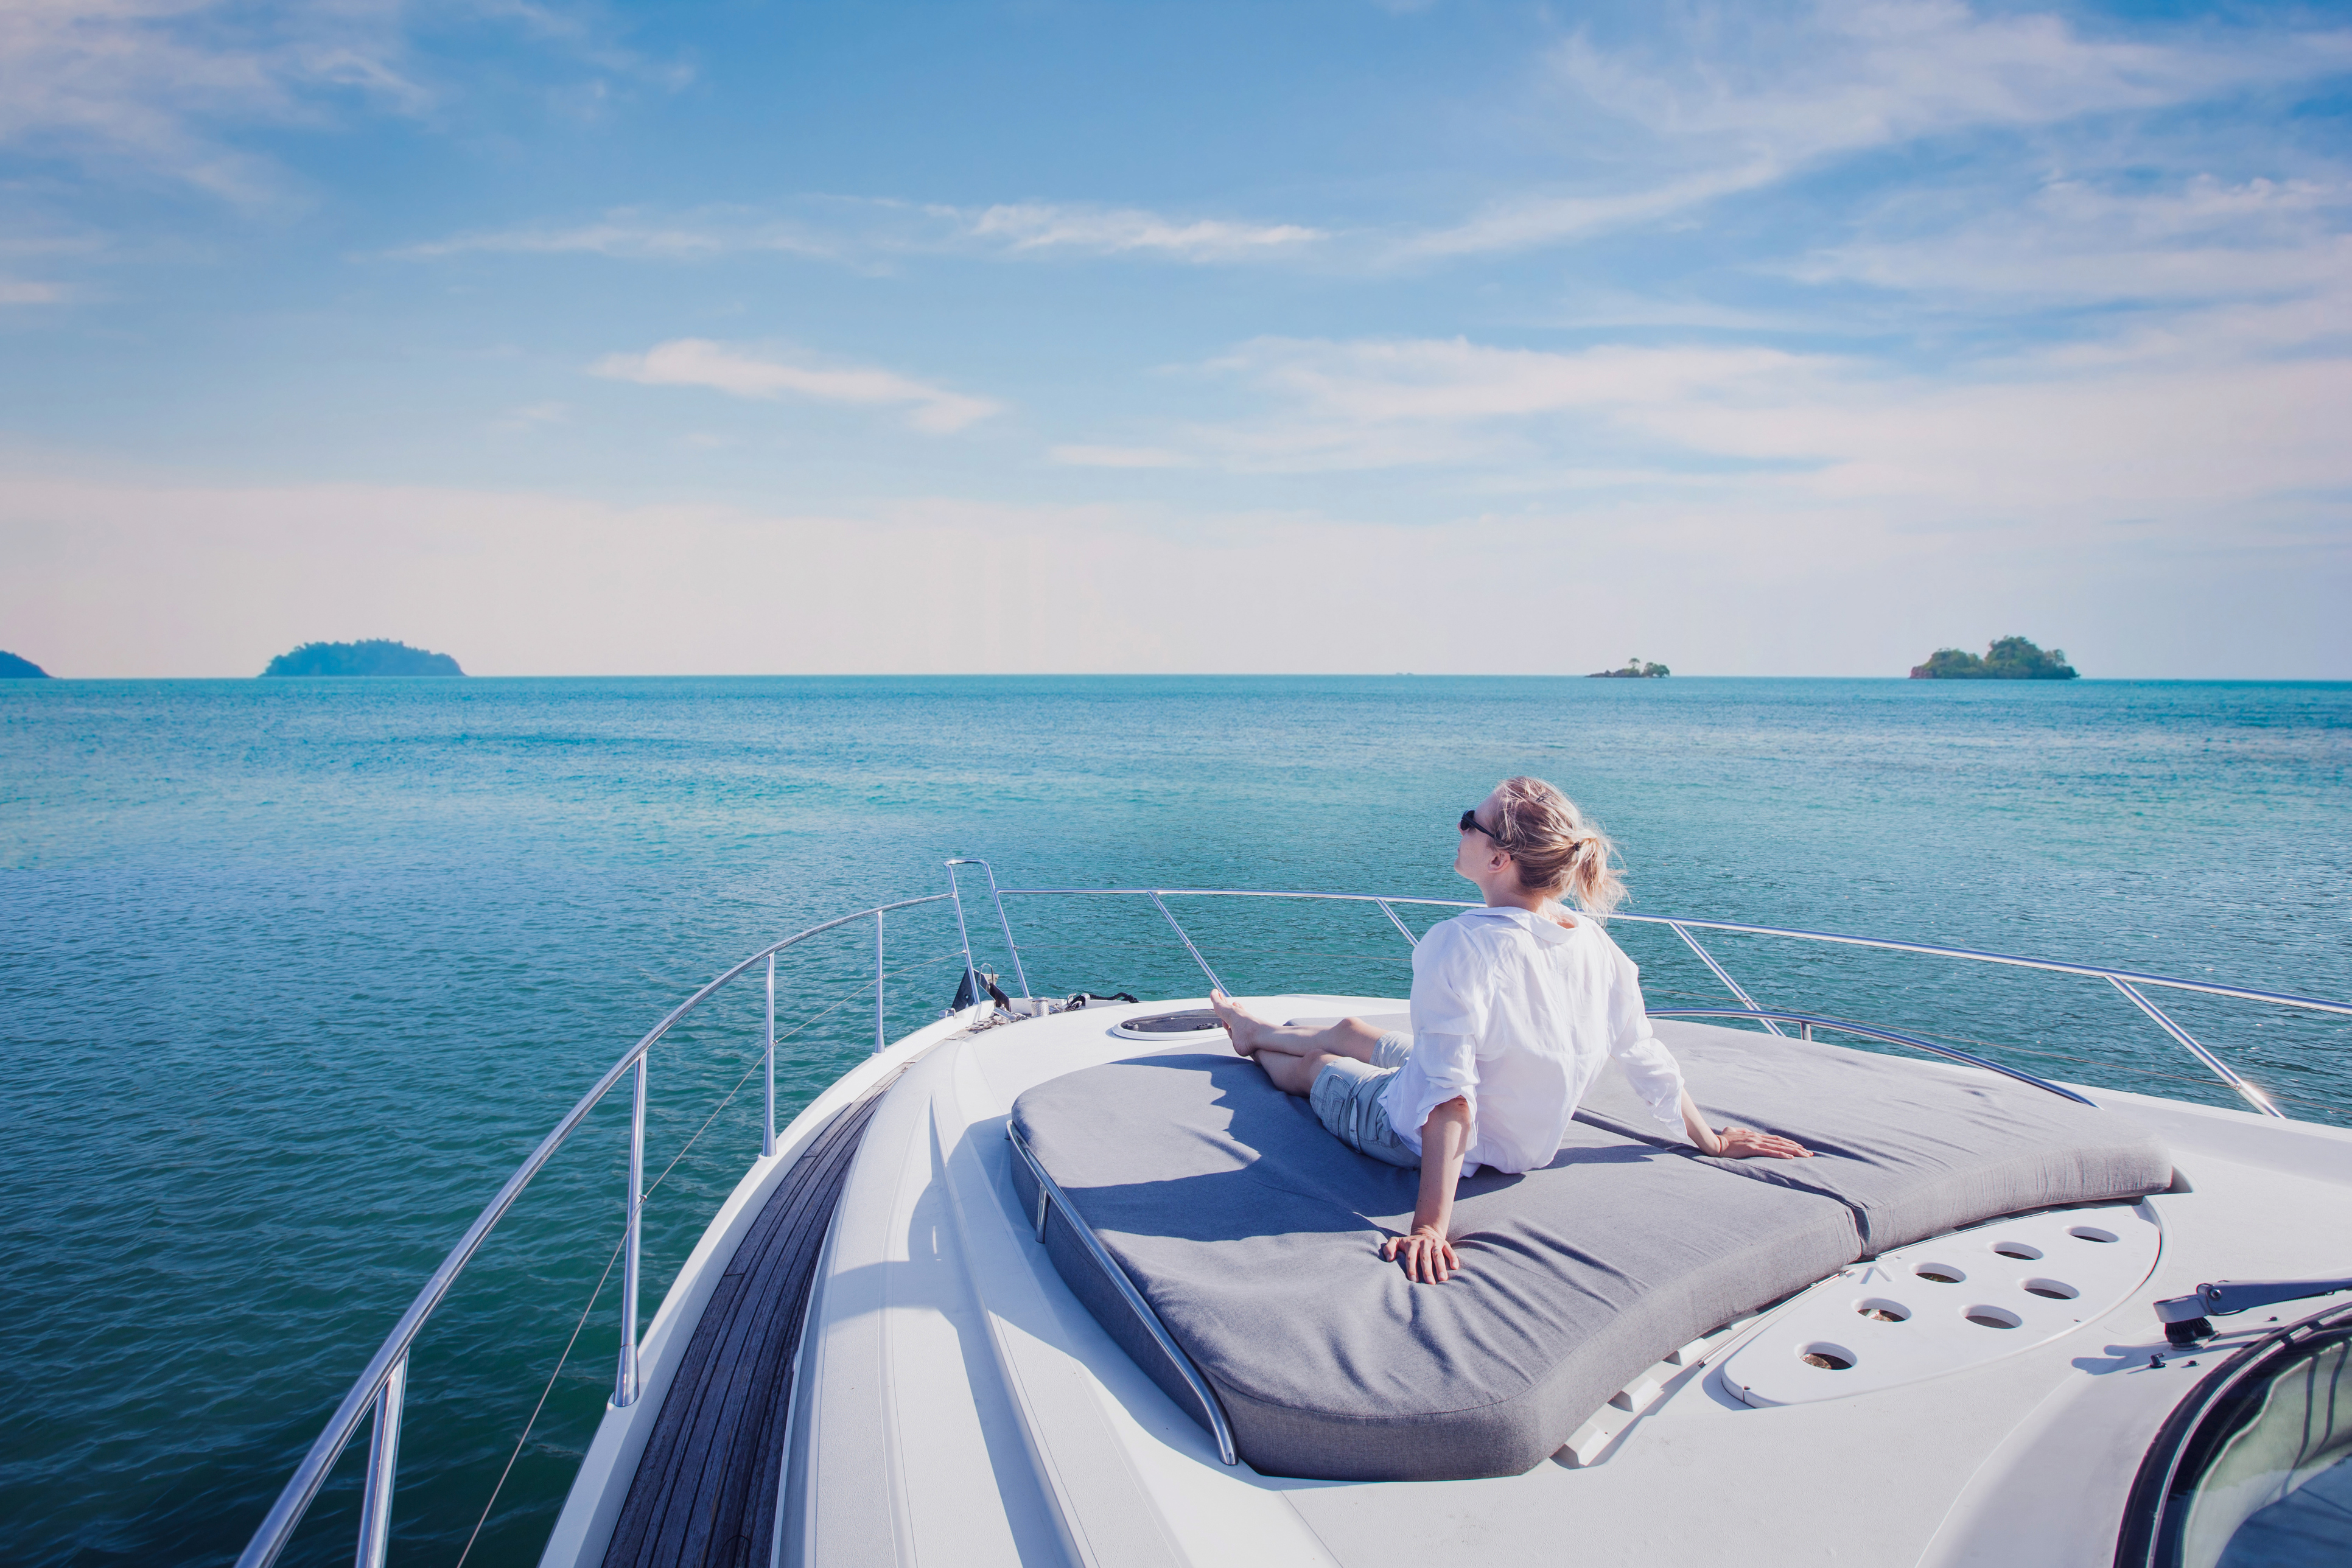 A lady enjoying sunshine on the boat